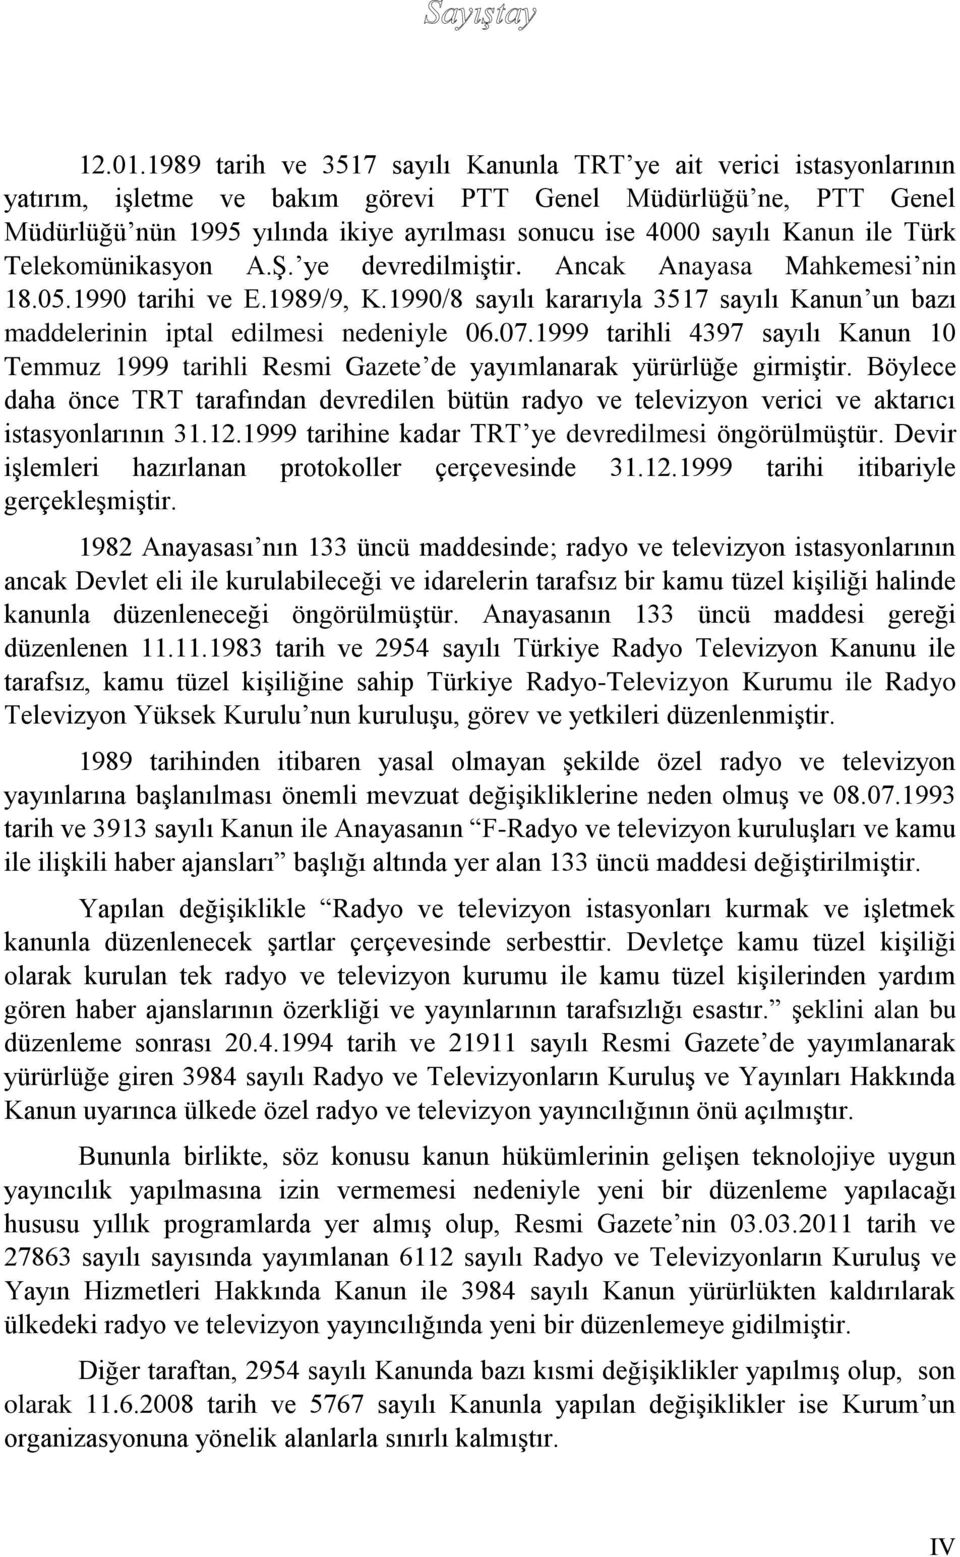 sayılı Kanun ile Türk Telekomünikasyon A.Ş. ye devredilmiştir. Ancak Anayasa Mahkemesi nin 18.05.1990 tarihi ve E.1989/9, K.